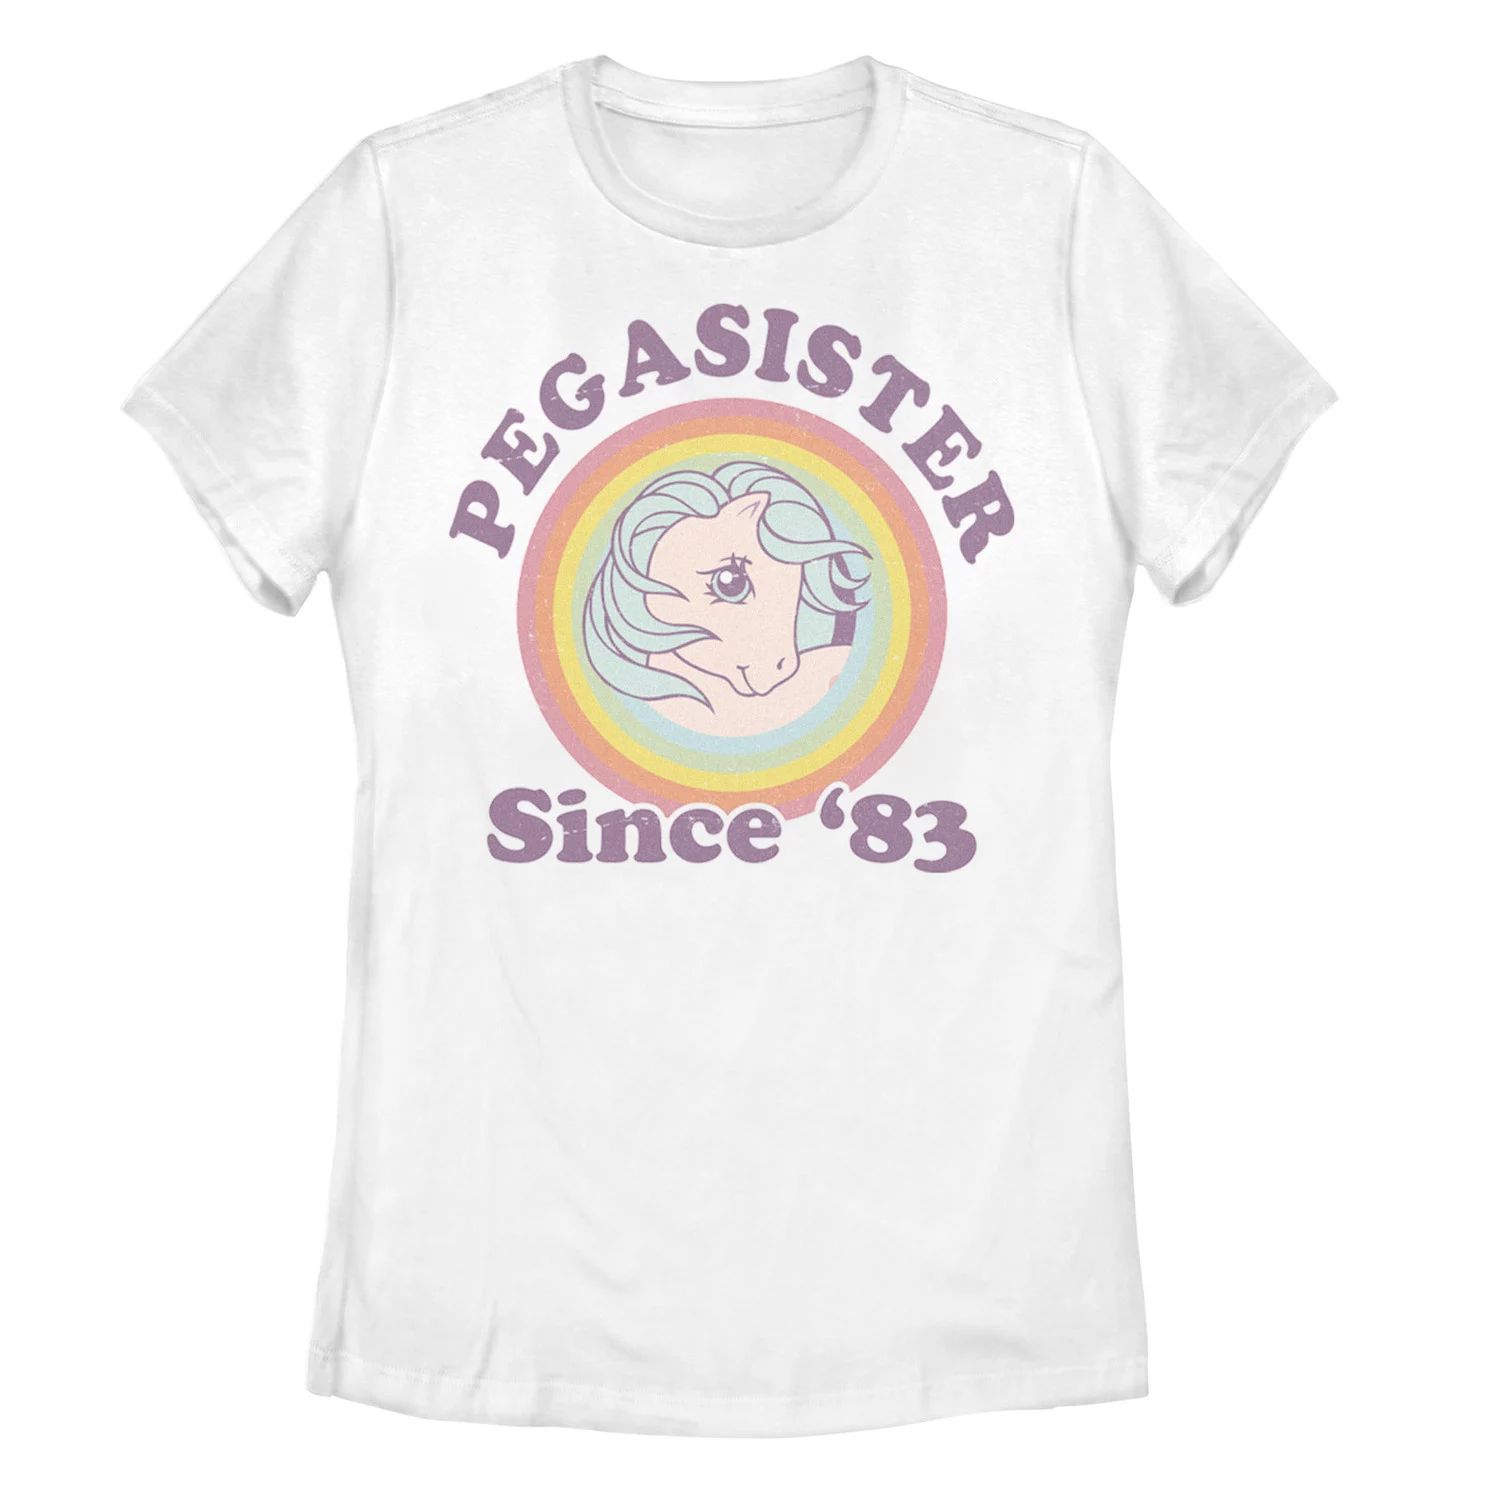 Детская футболка My Little Pony Pegasister с ретро-графикой 1983 года My Little Pony футболка с рисунком my little pony butterscotch для девочек 7–16 лет my little pony